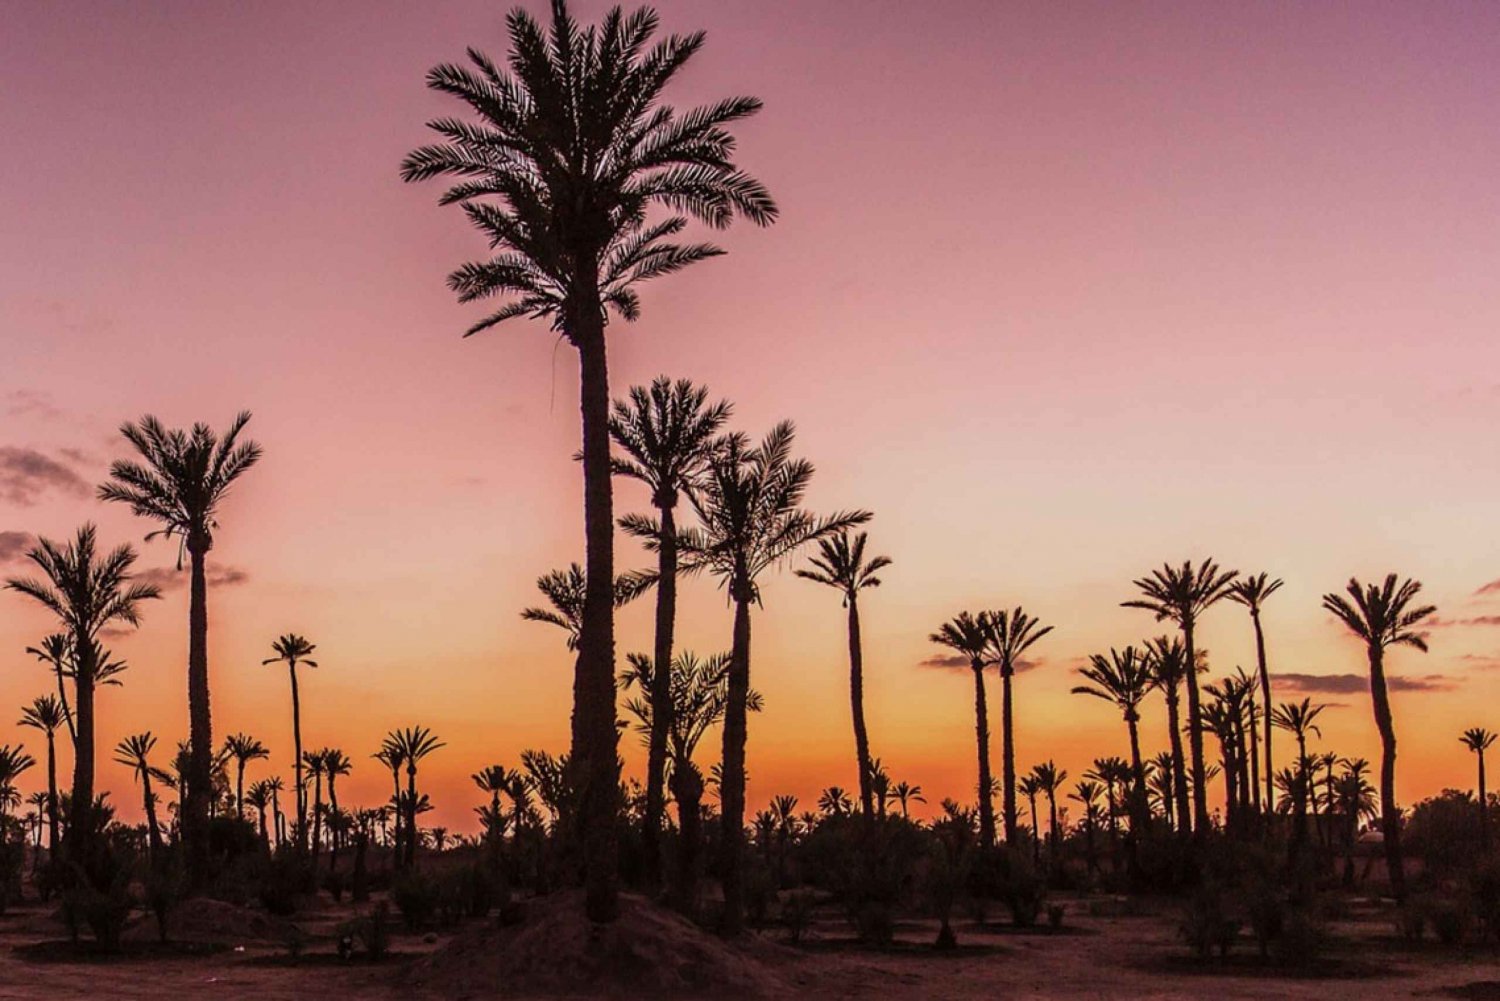 Palmeraie von Marrakesch: Kamelritt bei Sonnenuntergang